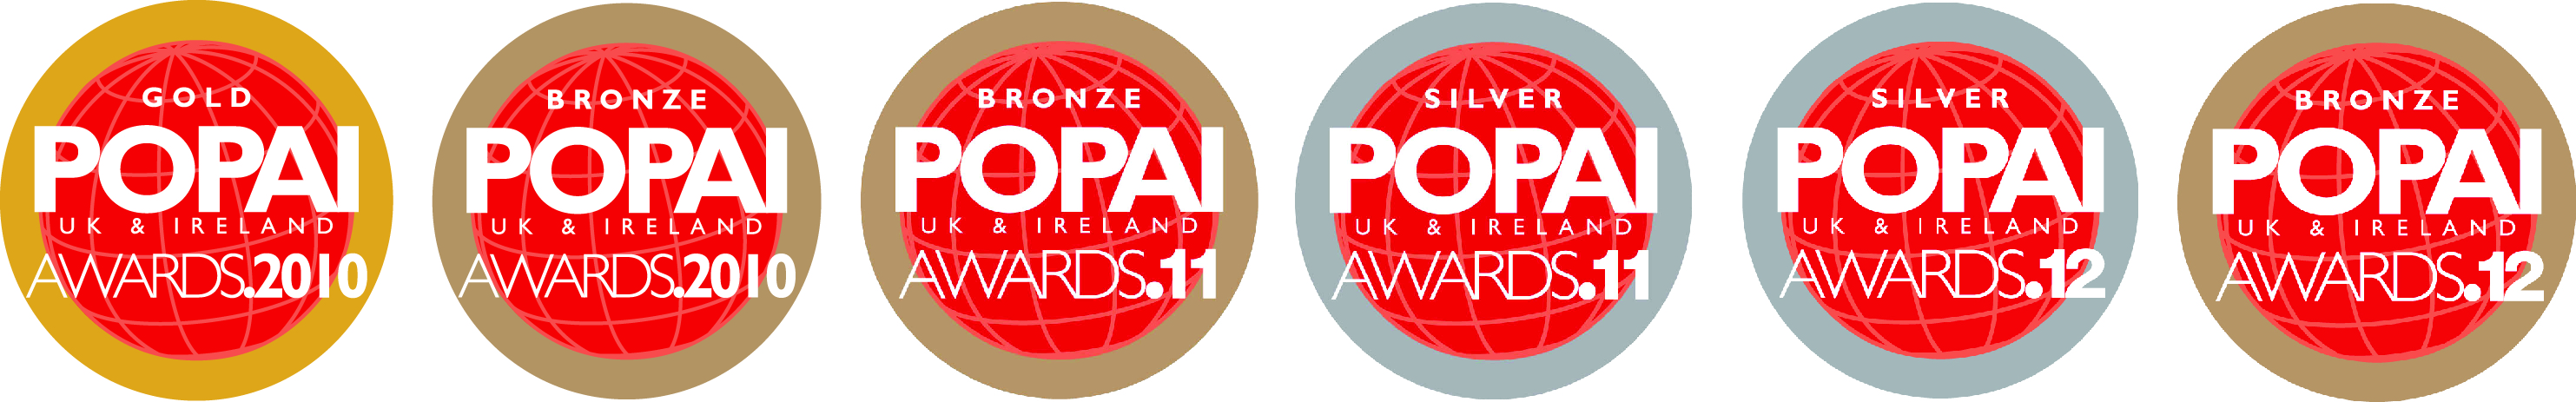 Popai Awards logos 2010 - 11- 12